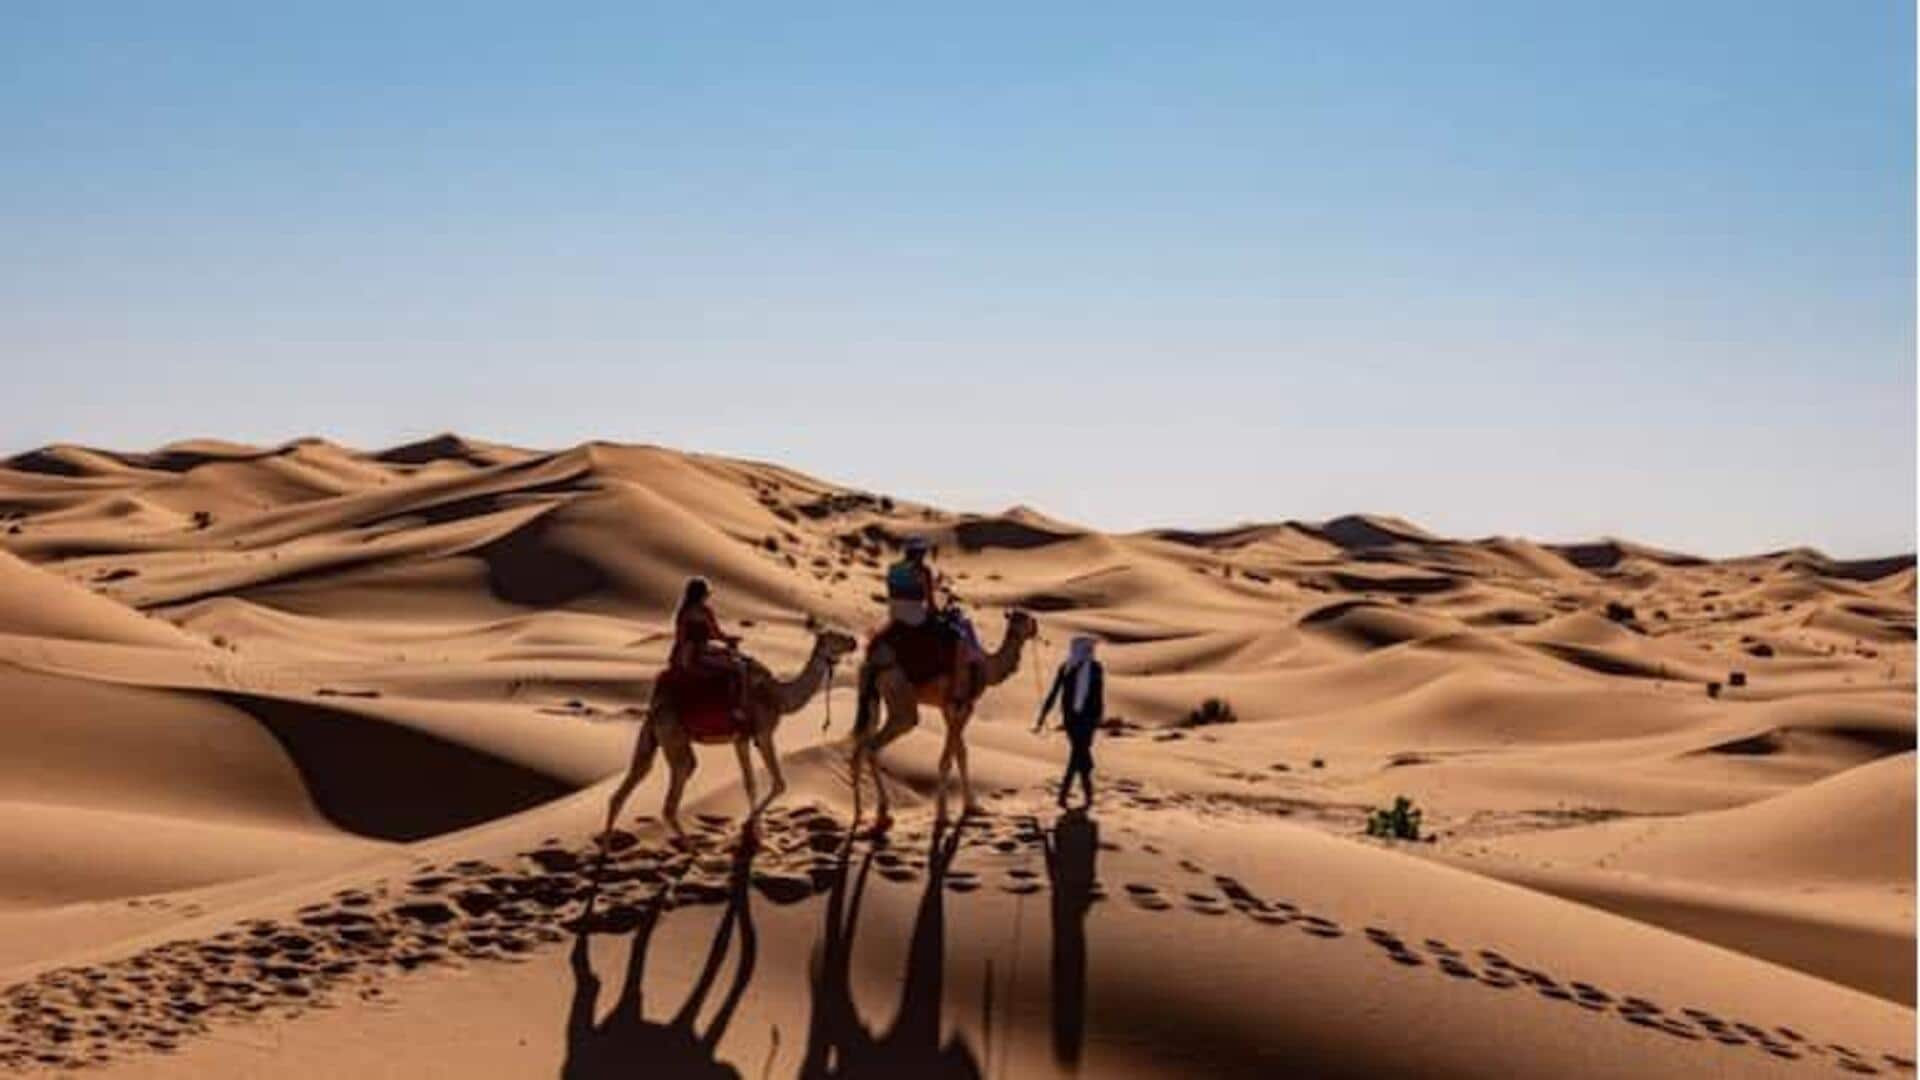 Sederet Kegiatan Menyenangkan Yang Dapat Dilakukan Di Gurun Sahara Maroko